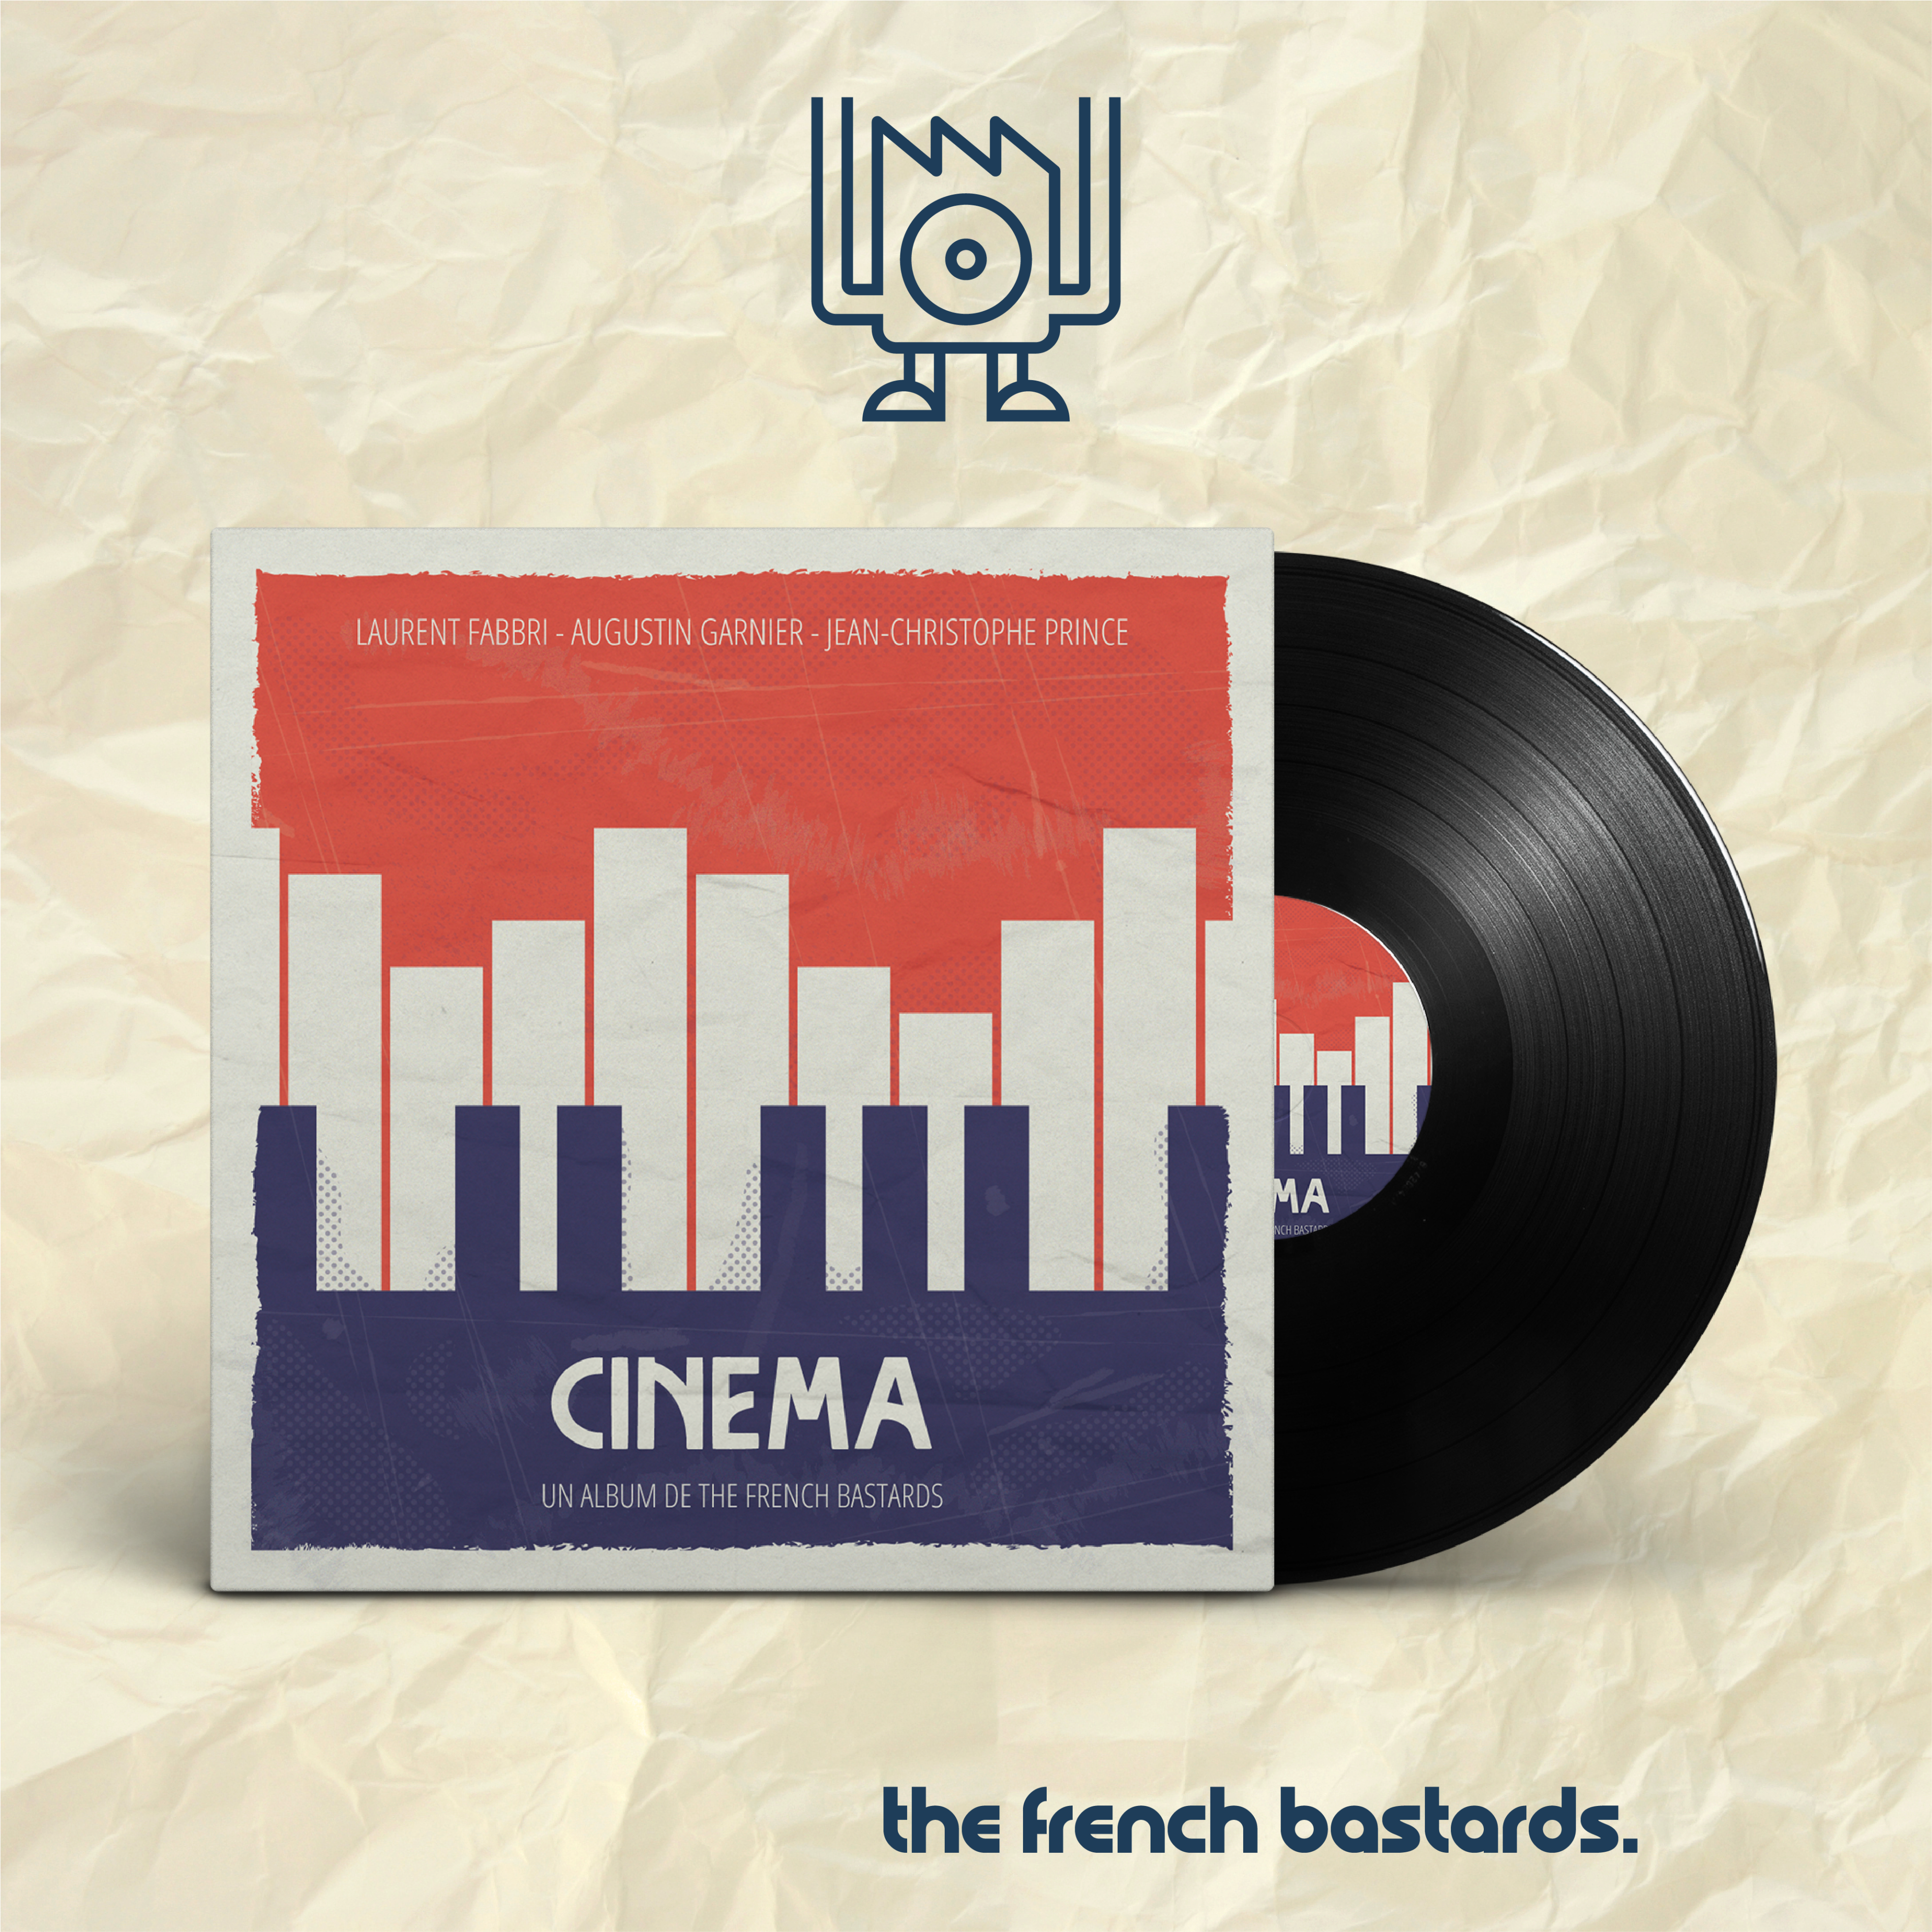 The French Bastards - Cinema - La Tiny Factory